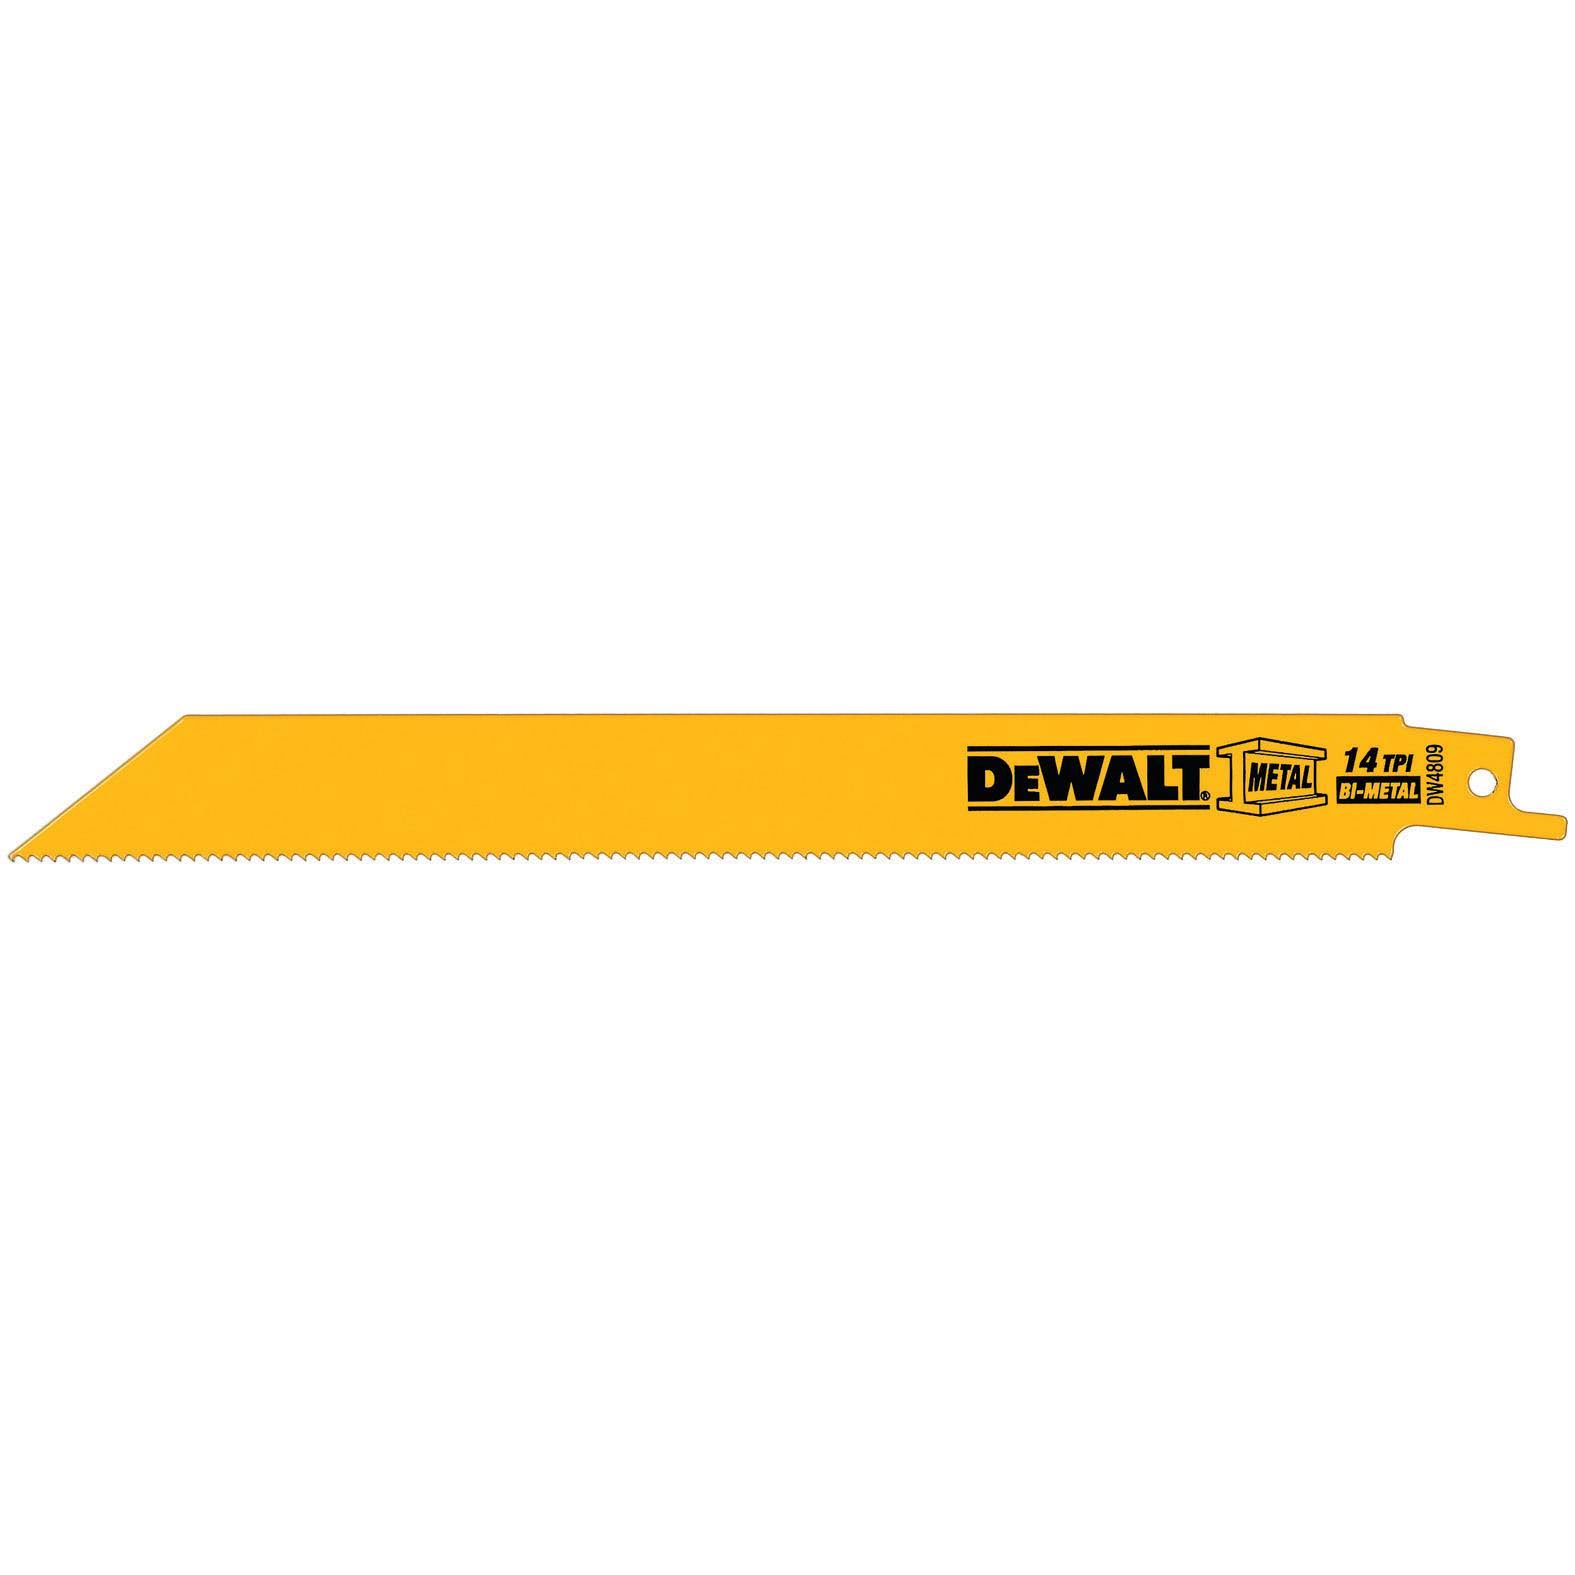 Dewalt DW4809 Reciprocating Saw Blades - 8" x 14 TPI